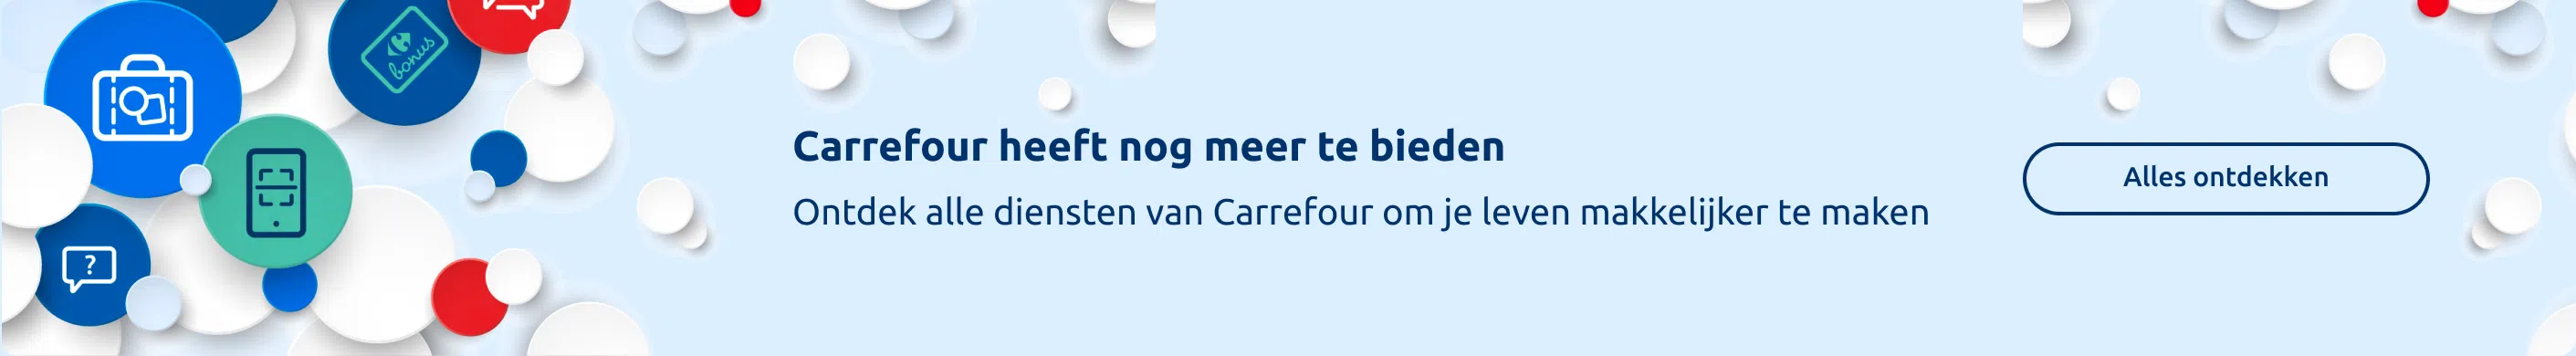 Carrefour heeft nog meer te bieden